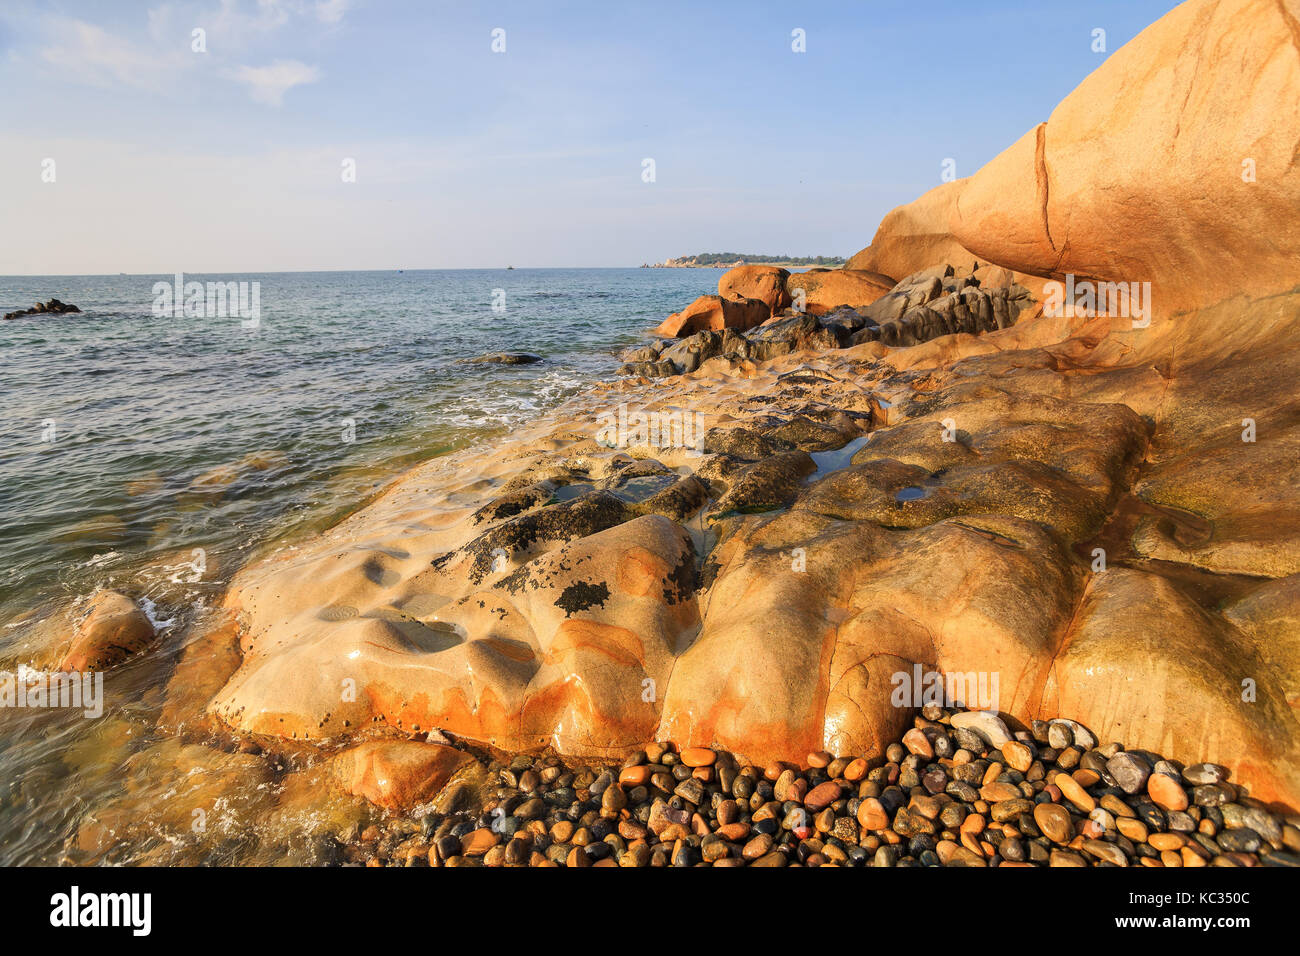 Co thach Strand, Binh Thuan, ist ein neues Ziel für Fotografen in Vietnam. Es ist berühmt für seine tausend Jahre - Steine in grüne Algen bedeckt Stockfoto